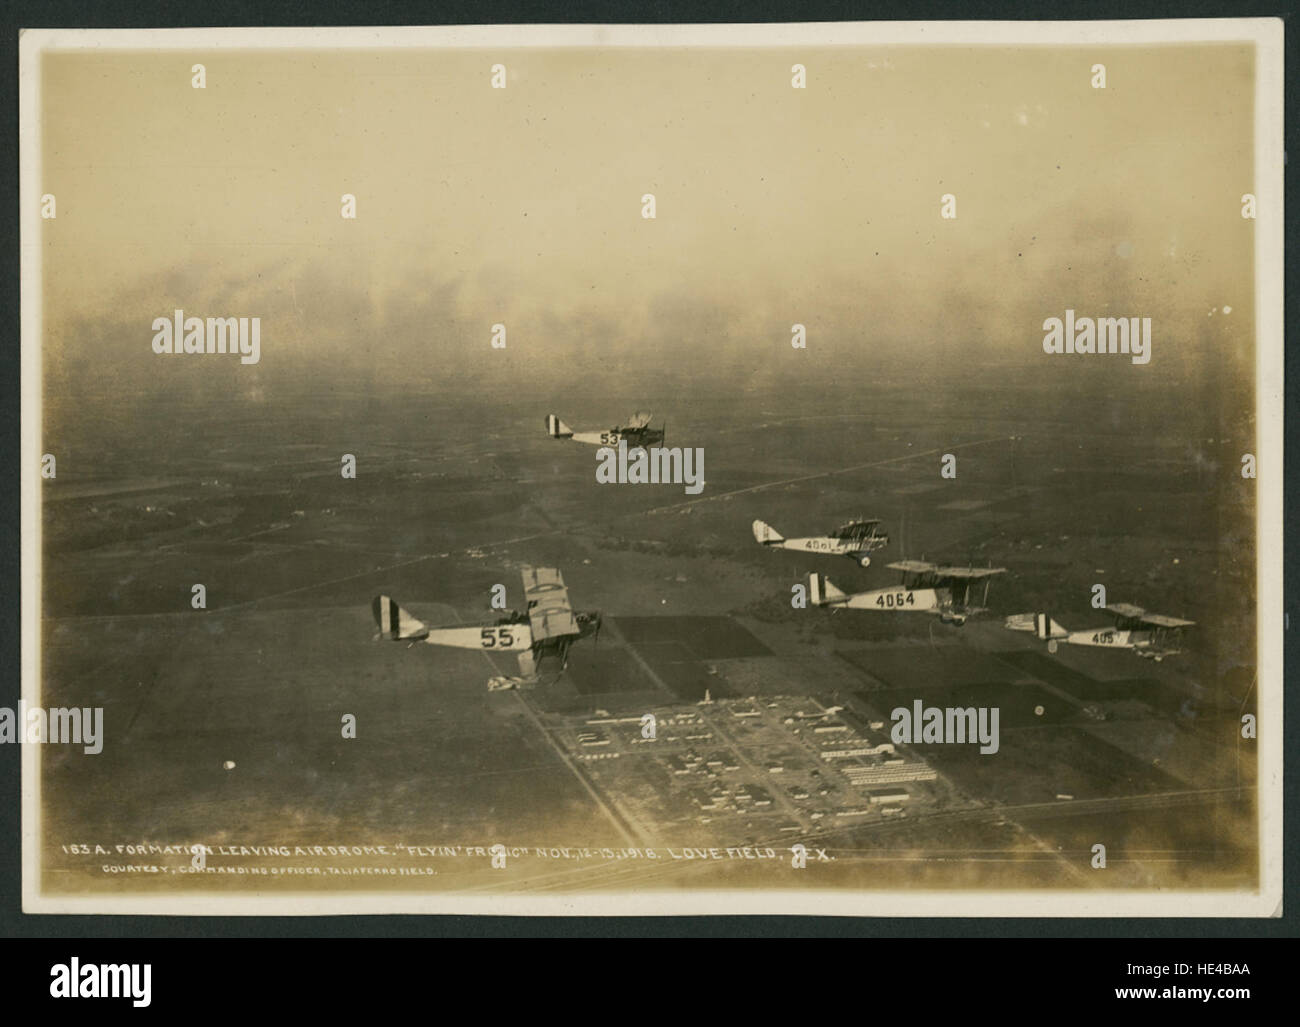 Formazione lasciando Airdrome 'Flyin' Frolic' Nov, 12-13, 1918 Love Field, Foto Stock